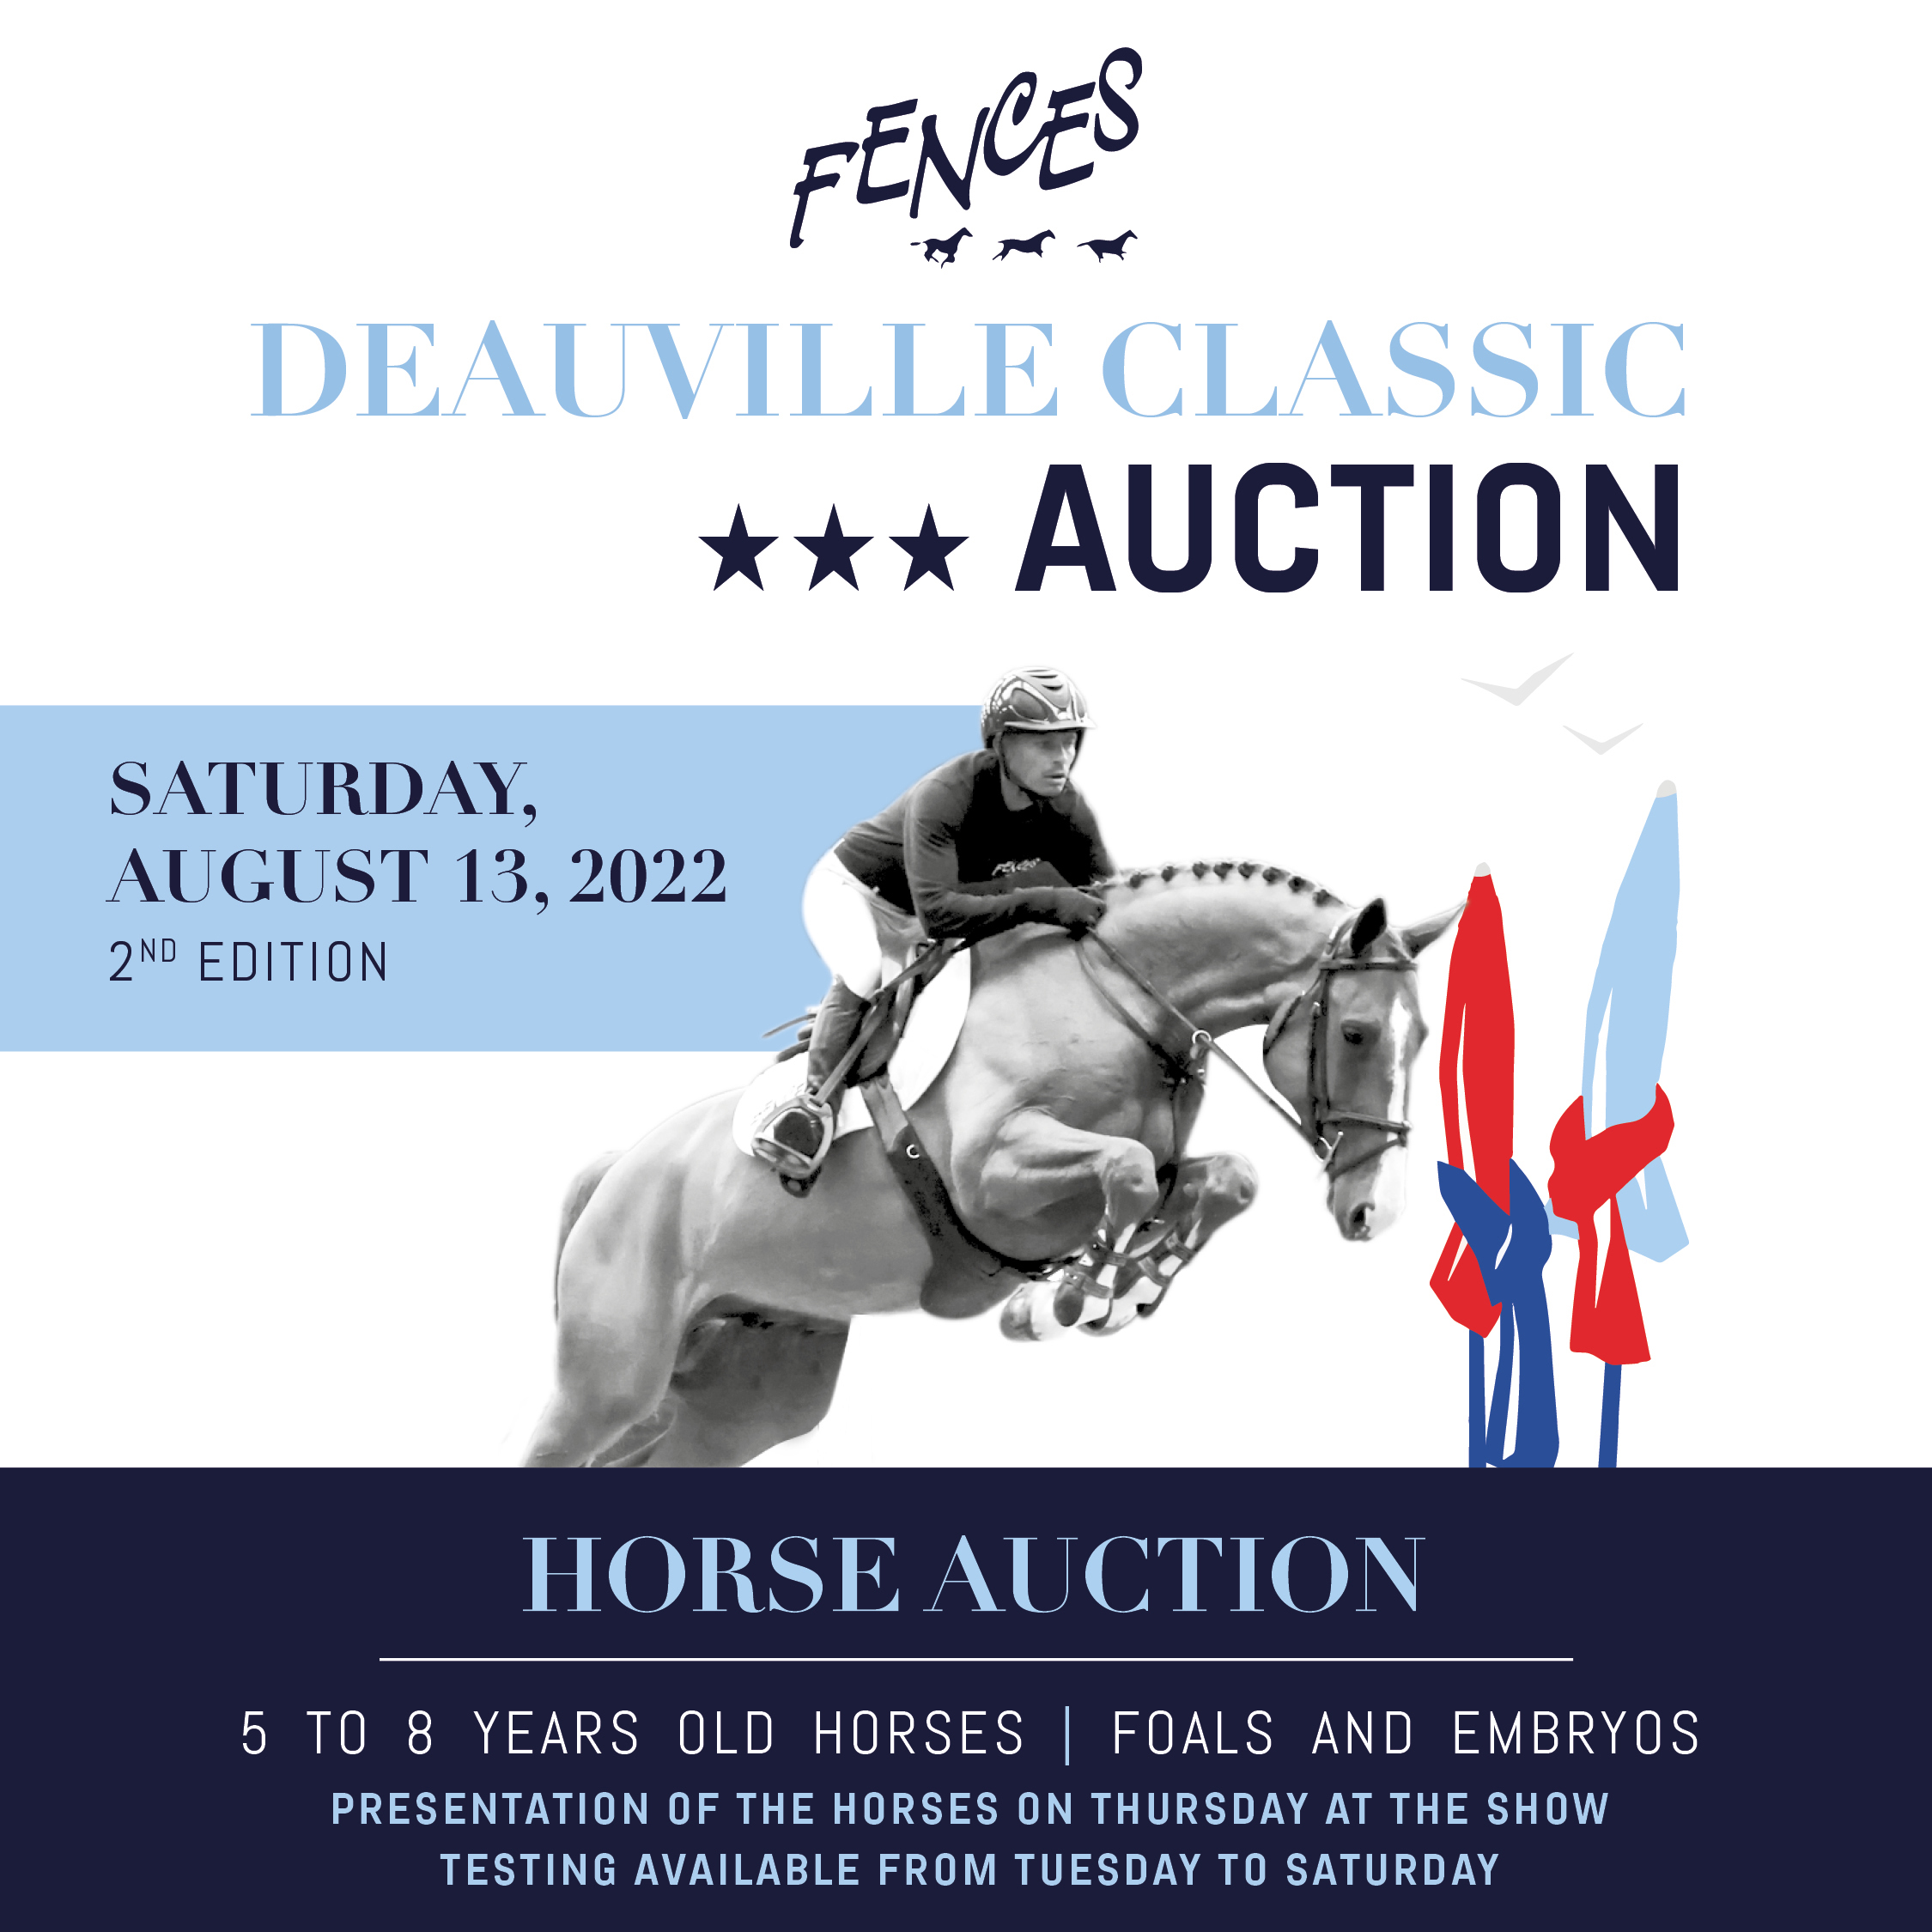 Deauville Classic Auction krijgt tweede editie